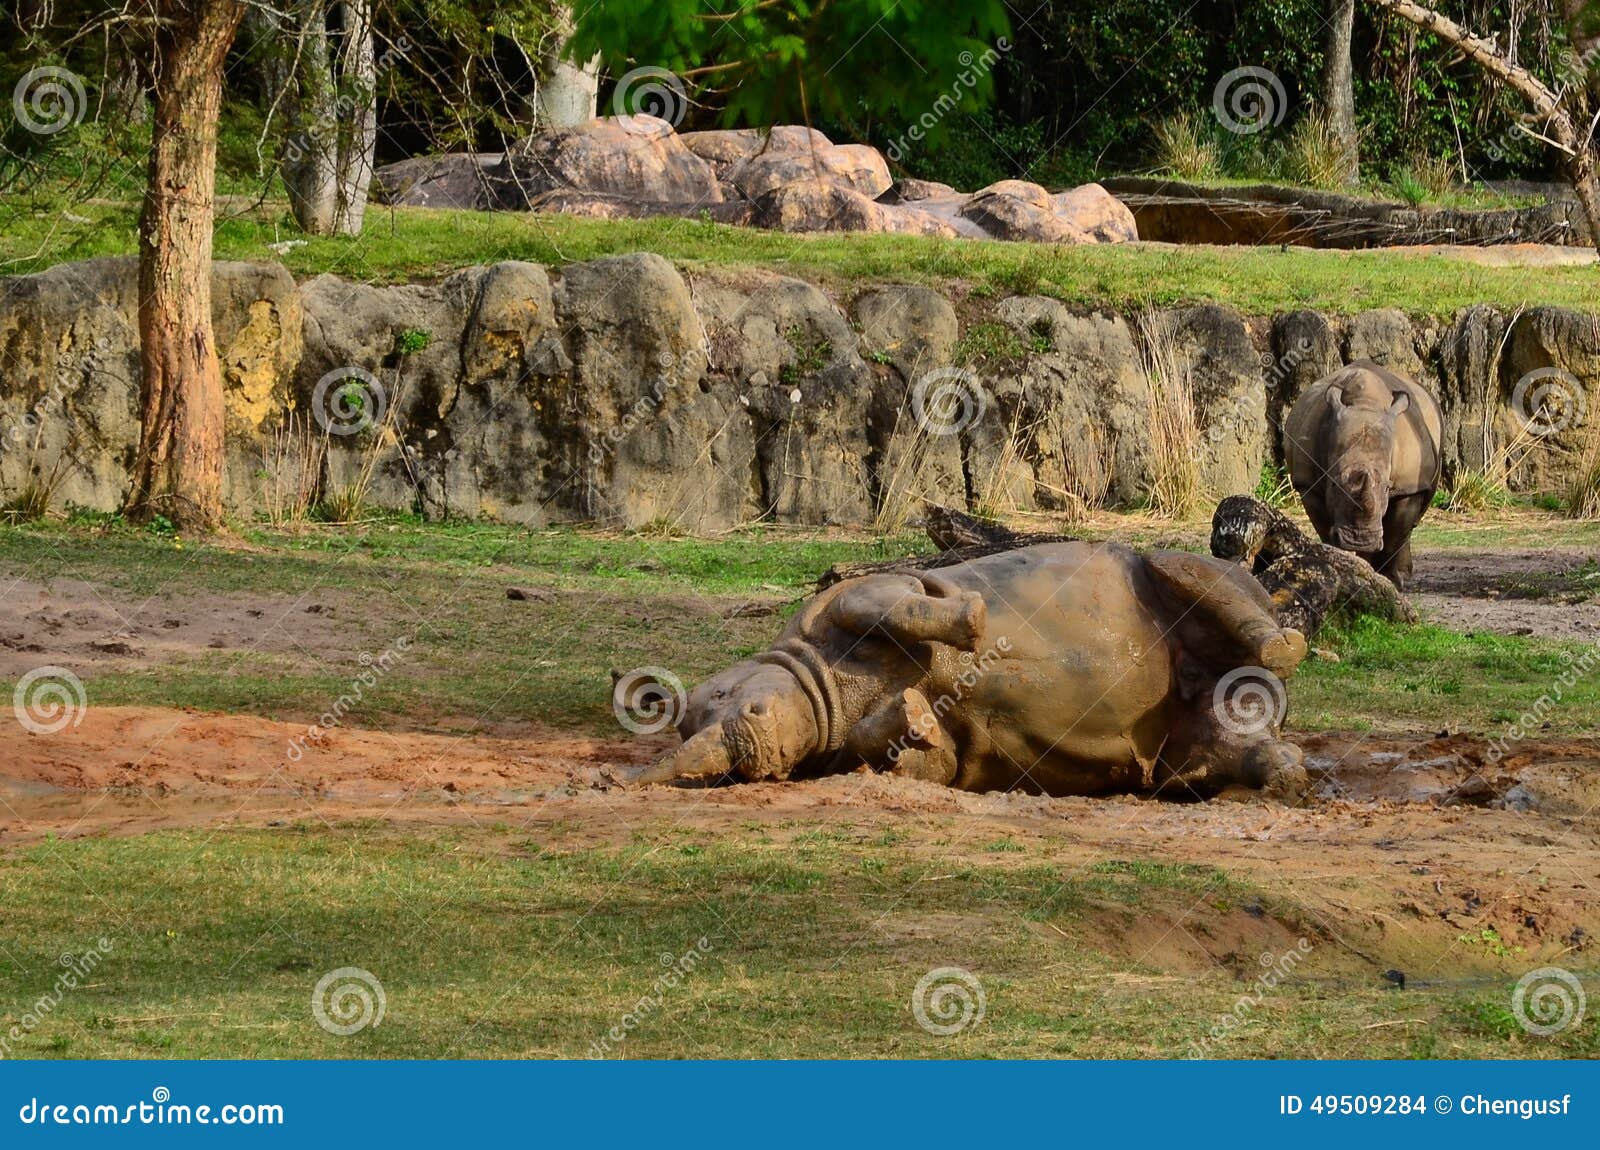 rhino is taking mud bath